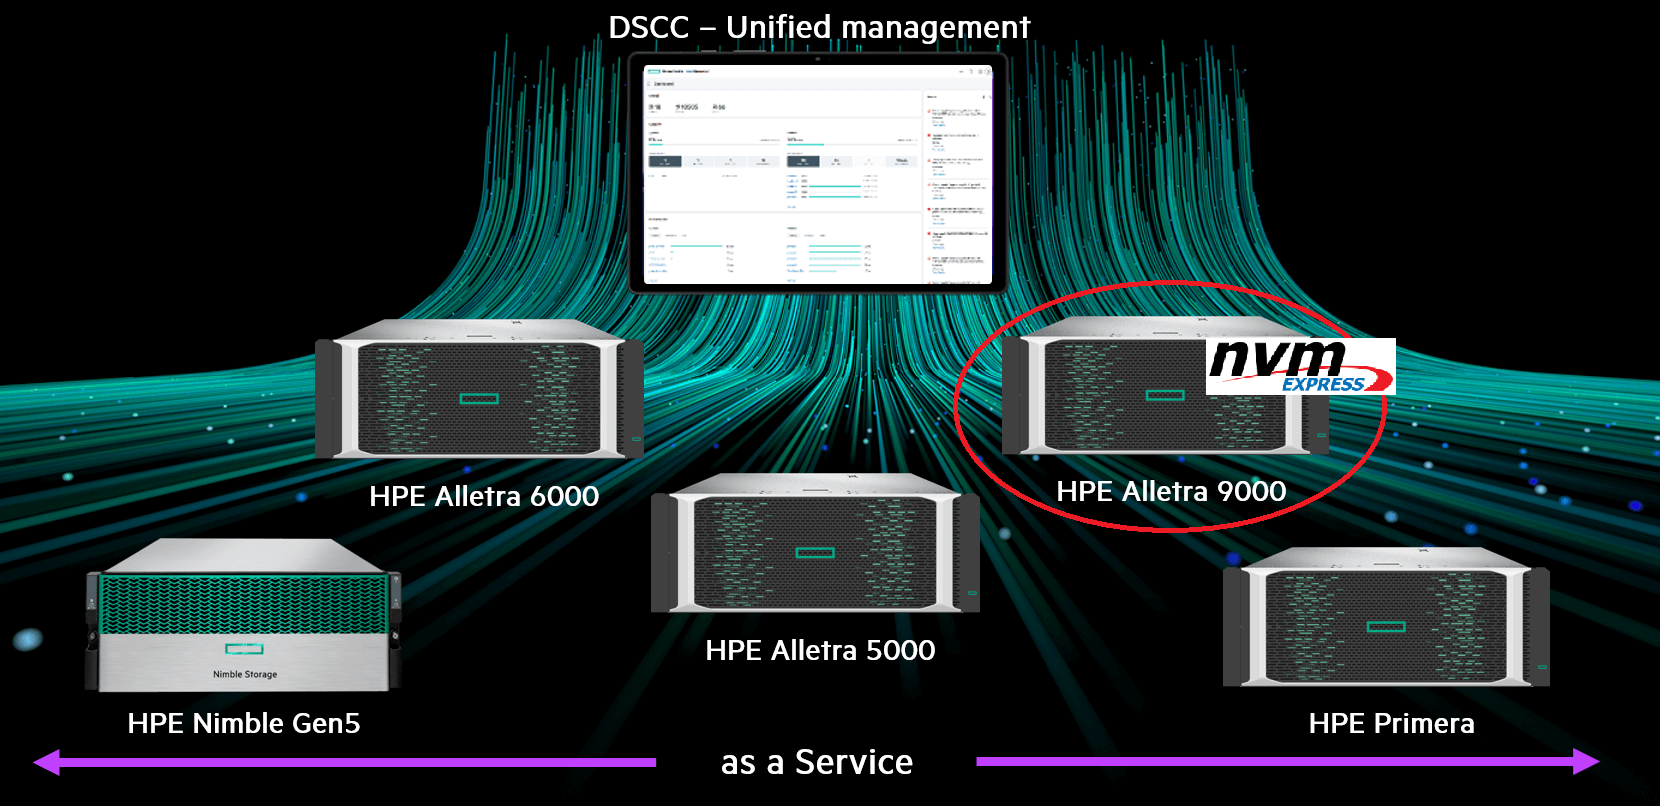 HPE Alletra 9000 - безпрецендетна 100% доступність та ультрависока продуктивність для надійного зберігання критично важливих даних 